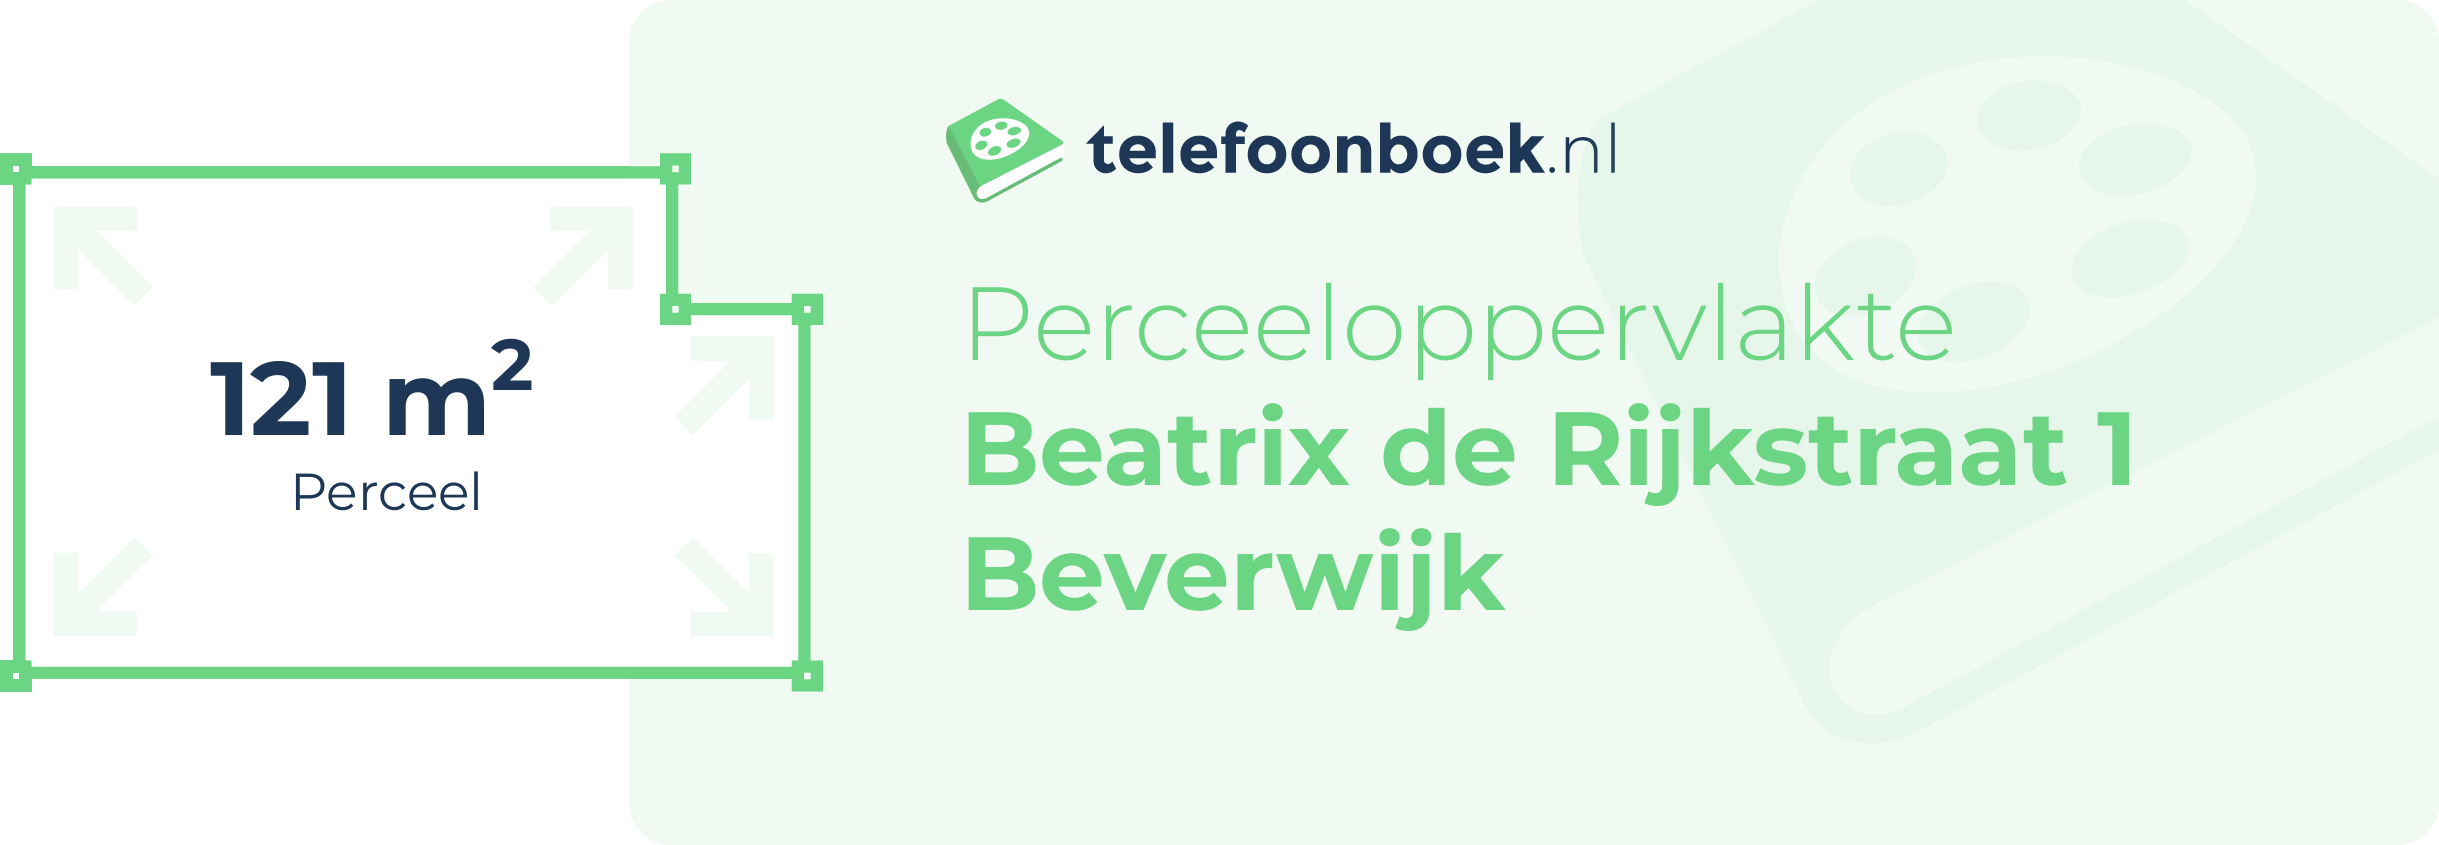 Perceeloppervlakte Beatrix De Rijkstraat 1 Beverwijk